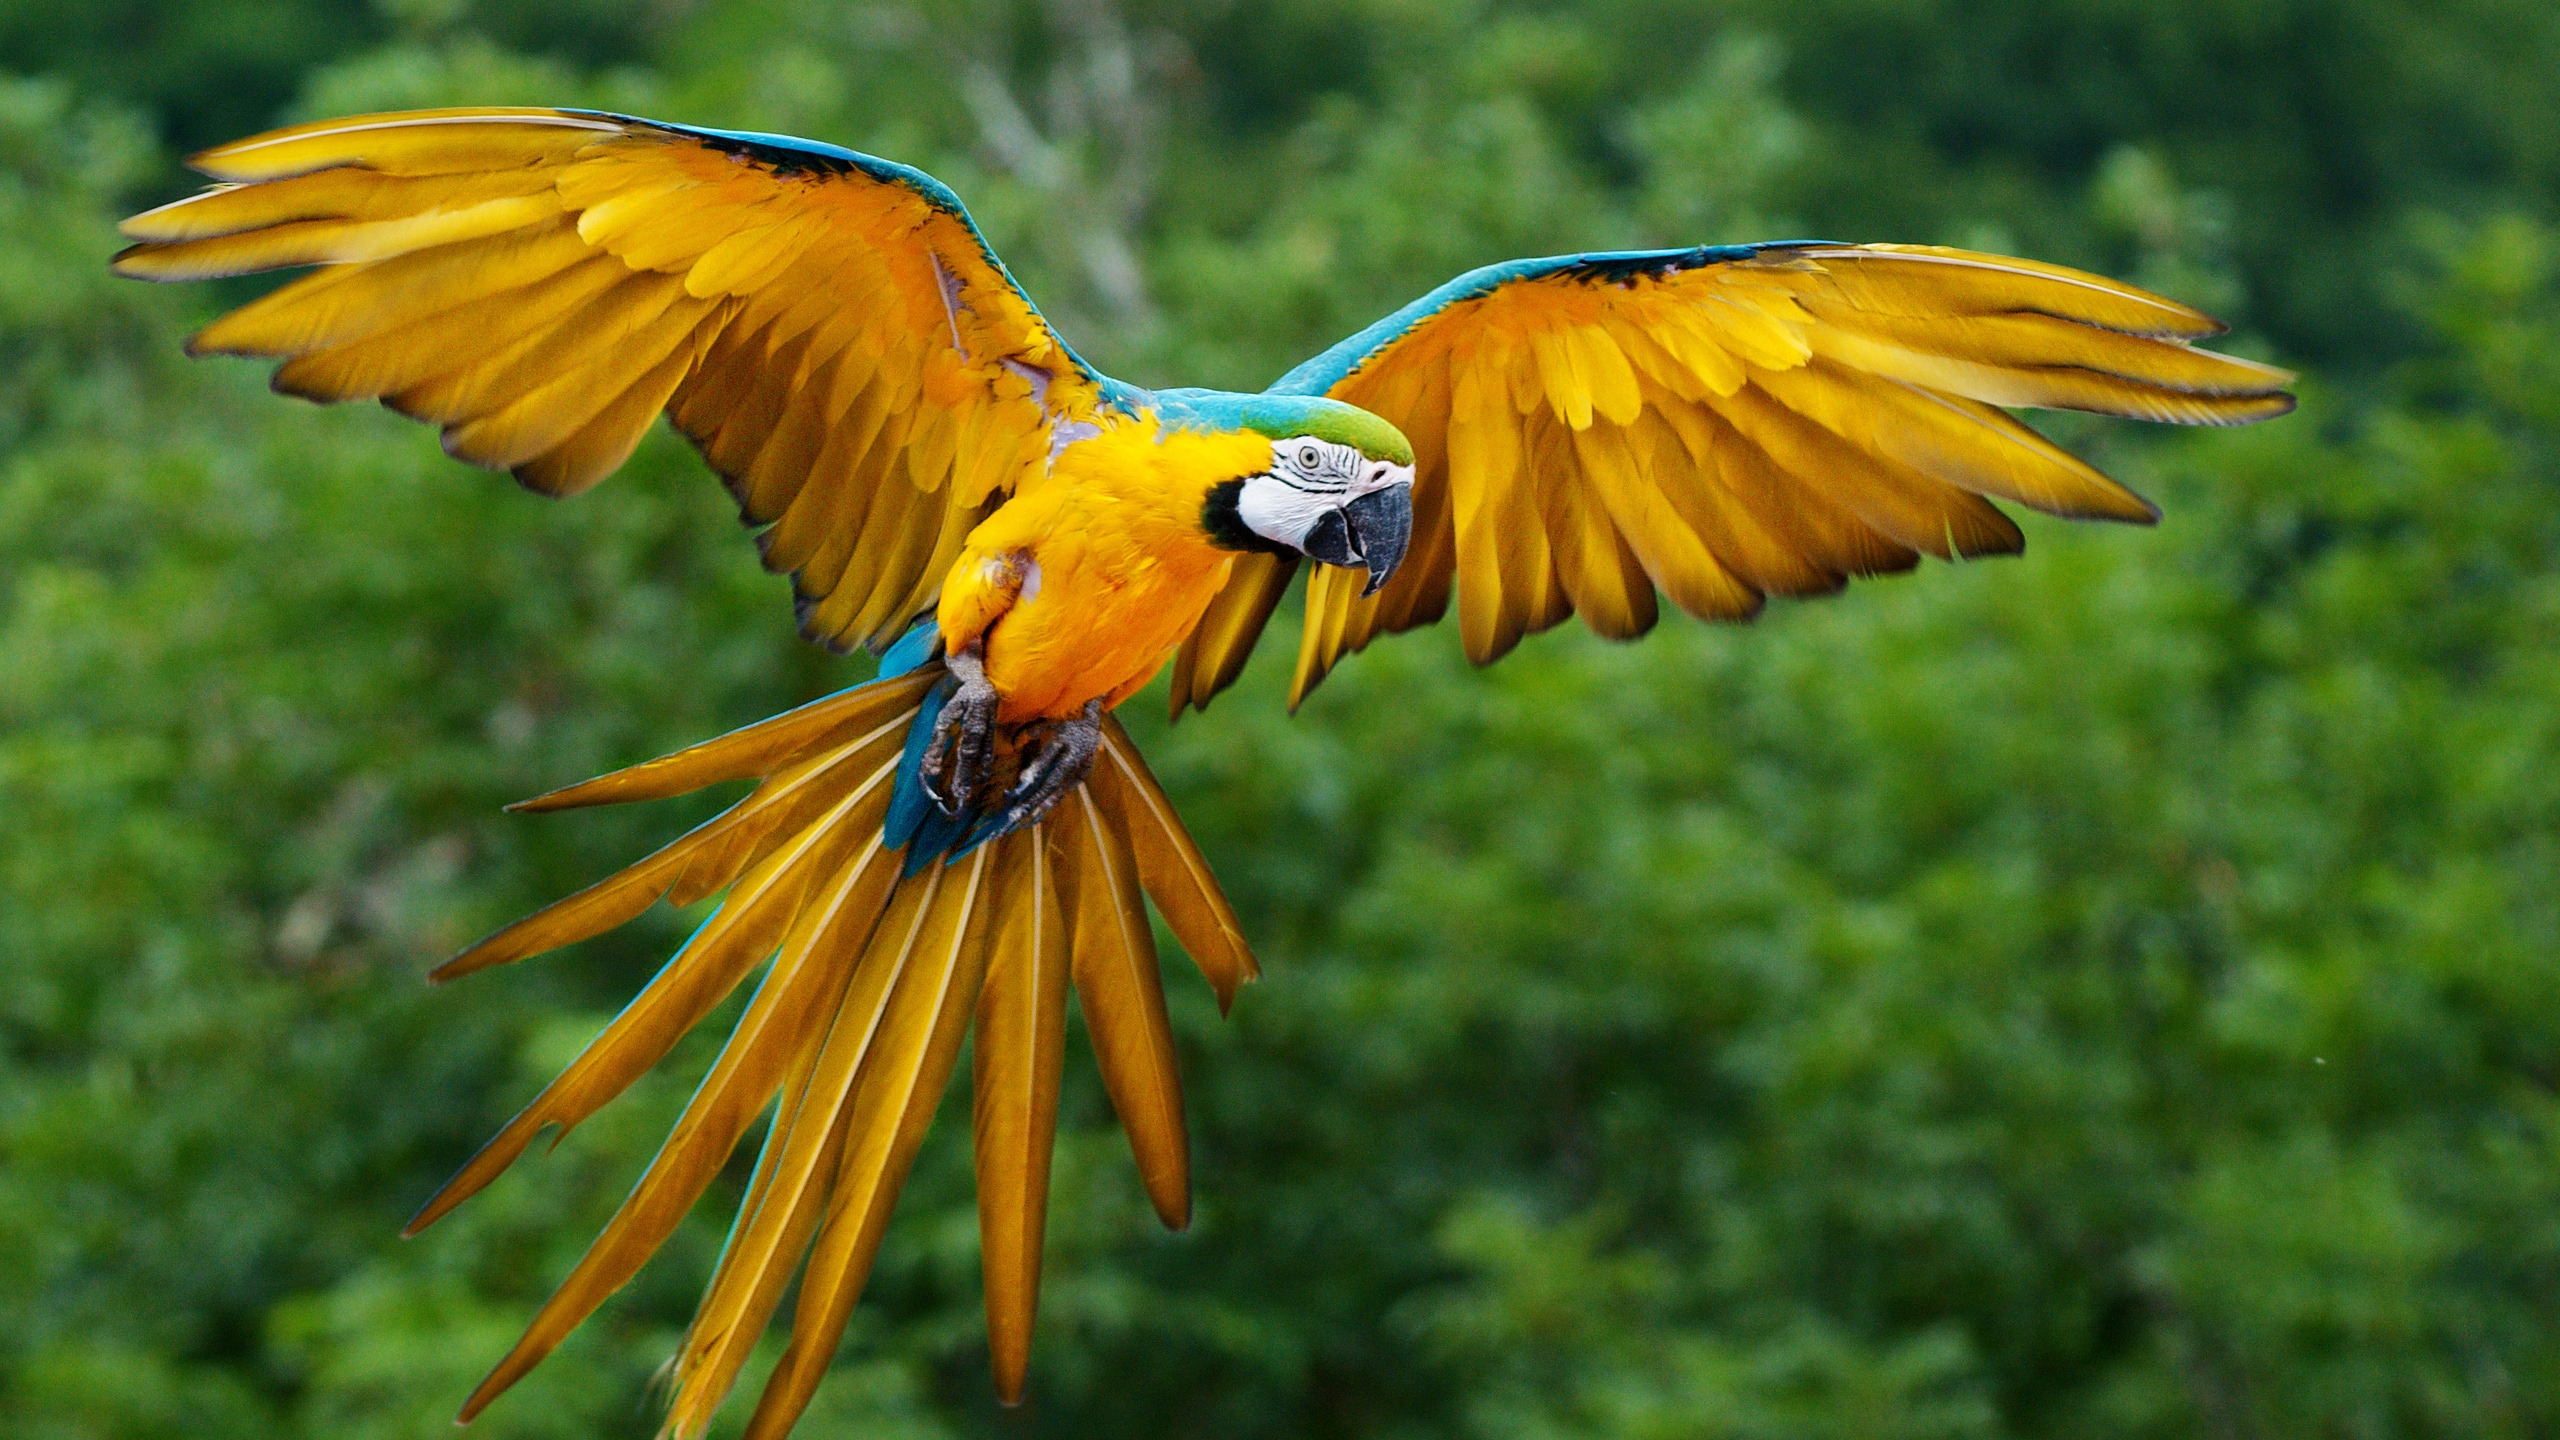 Parrot Flying for 2560x1440 HDTV resolution